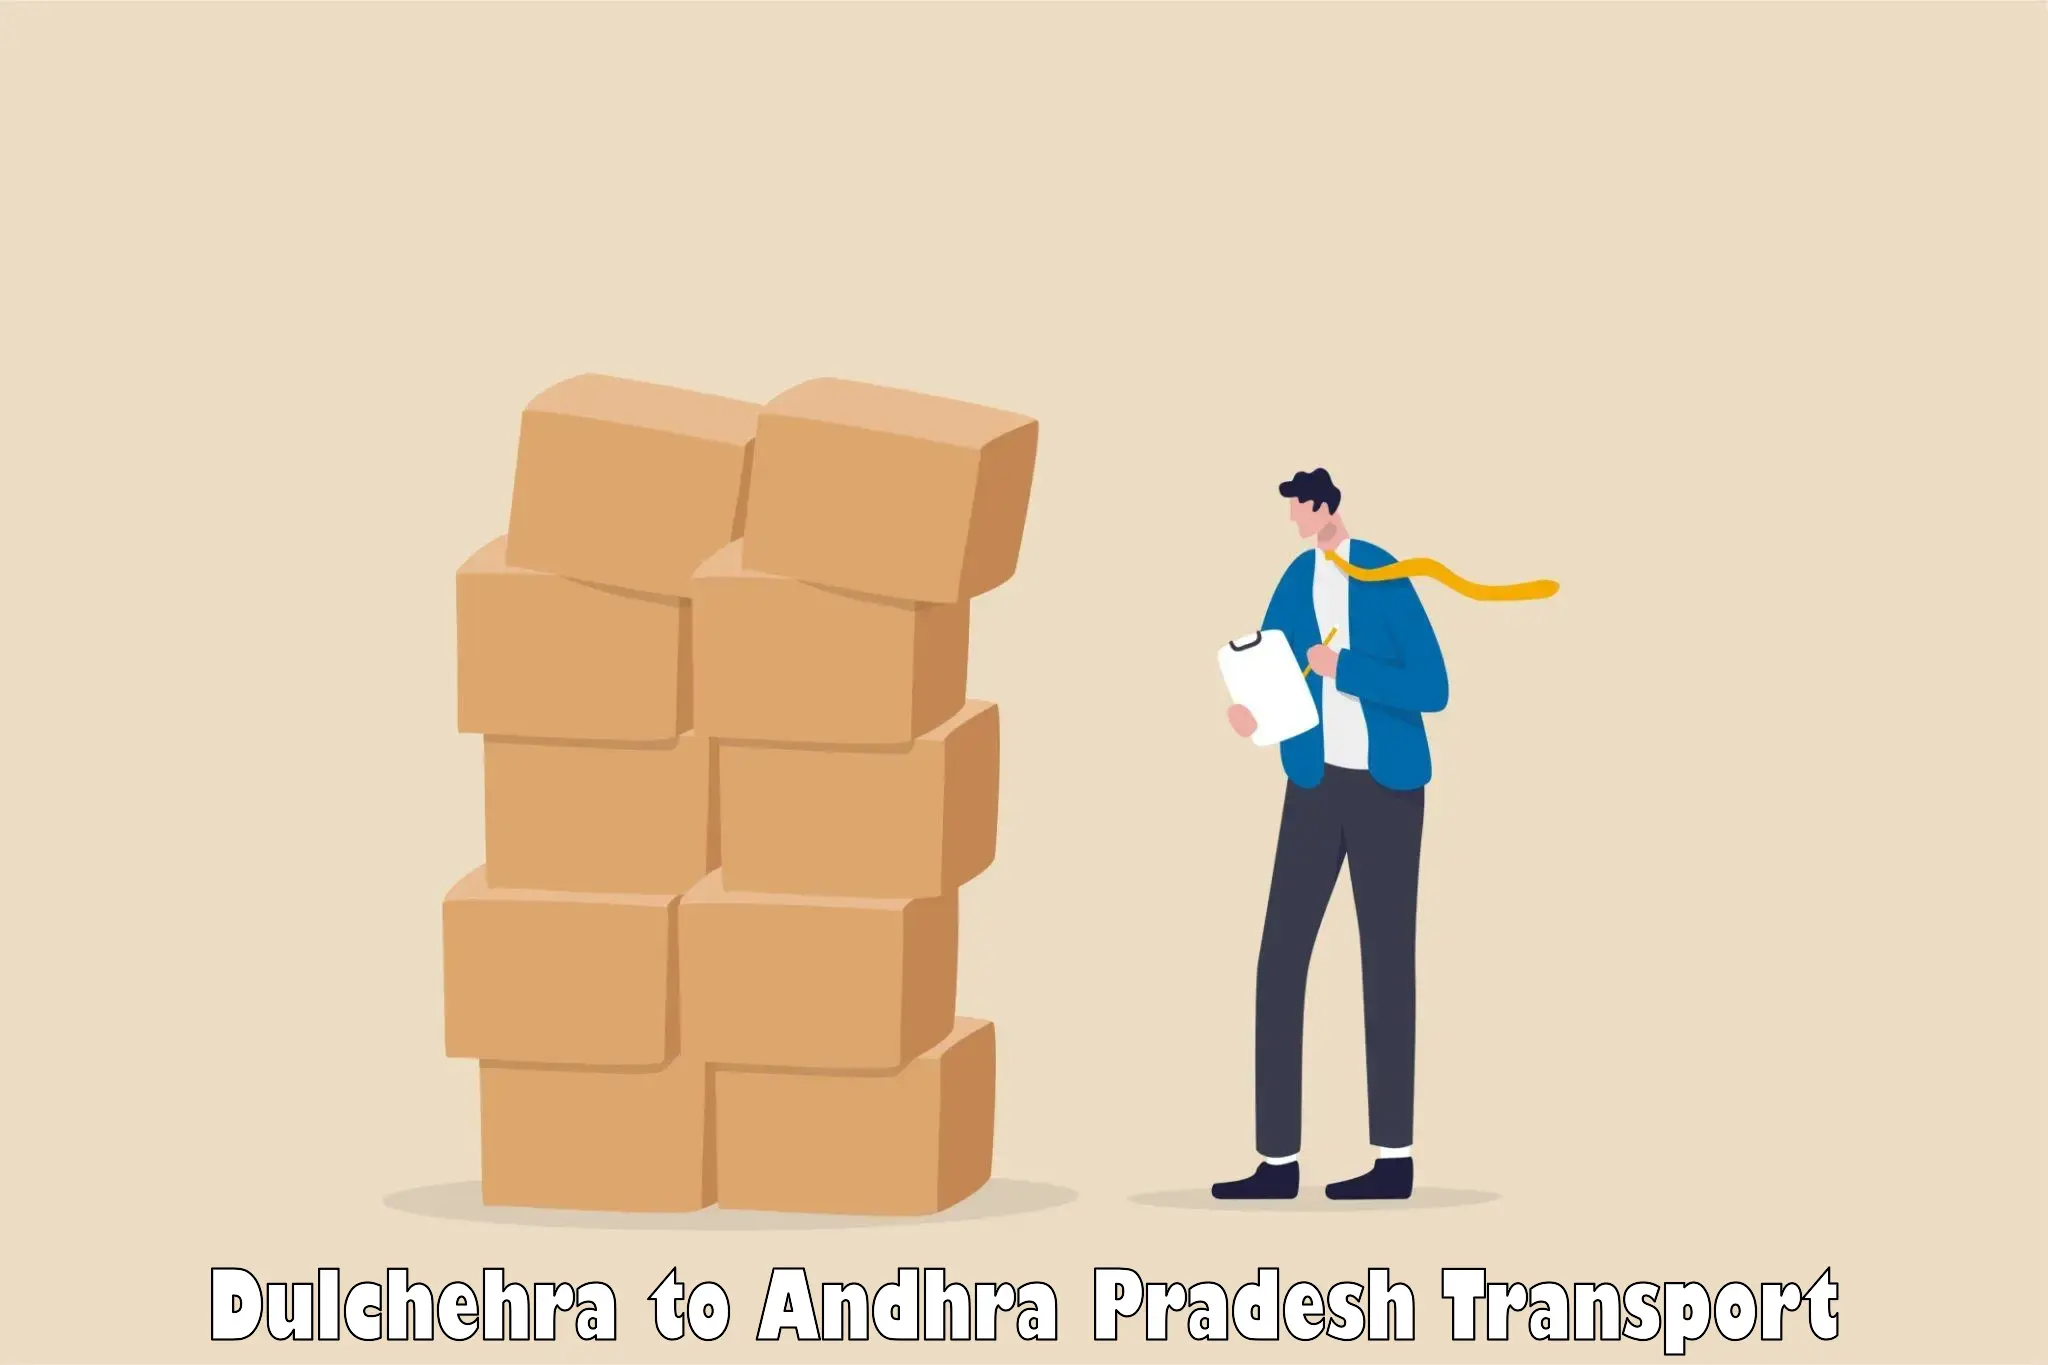 Nearby transport service Dulchehra to Amarapuram